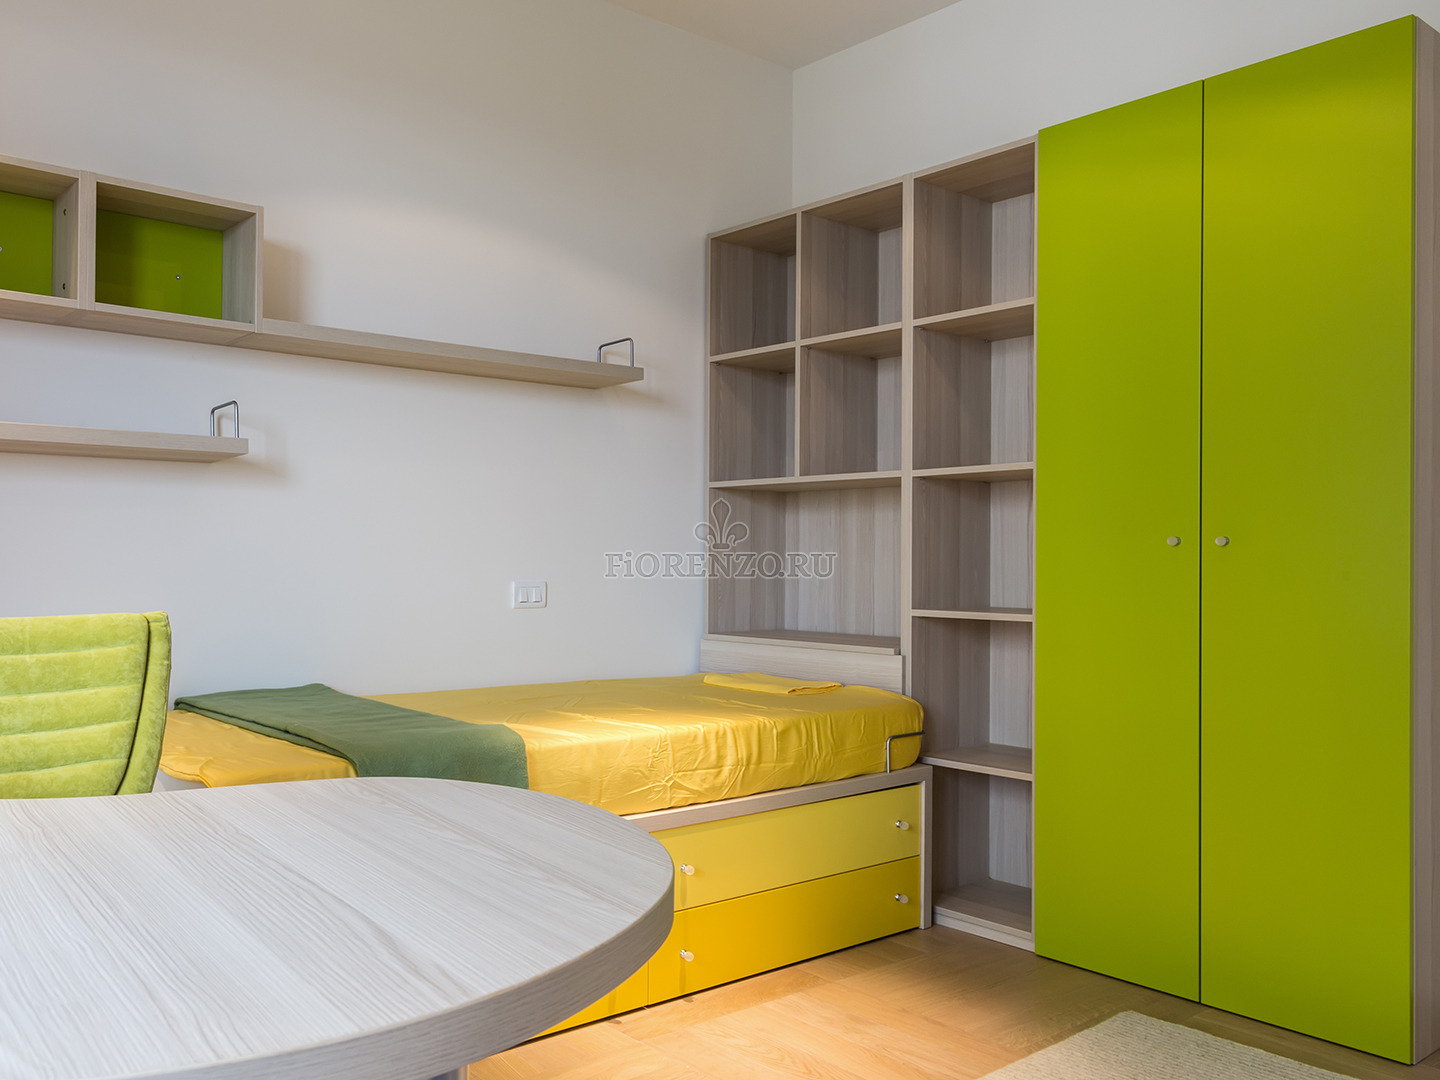 Детская комната в желто-зелёных тонах «Лайм»